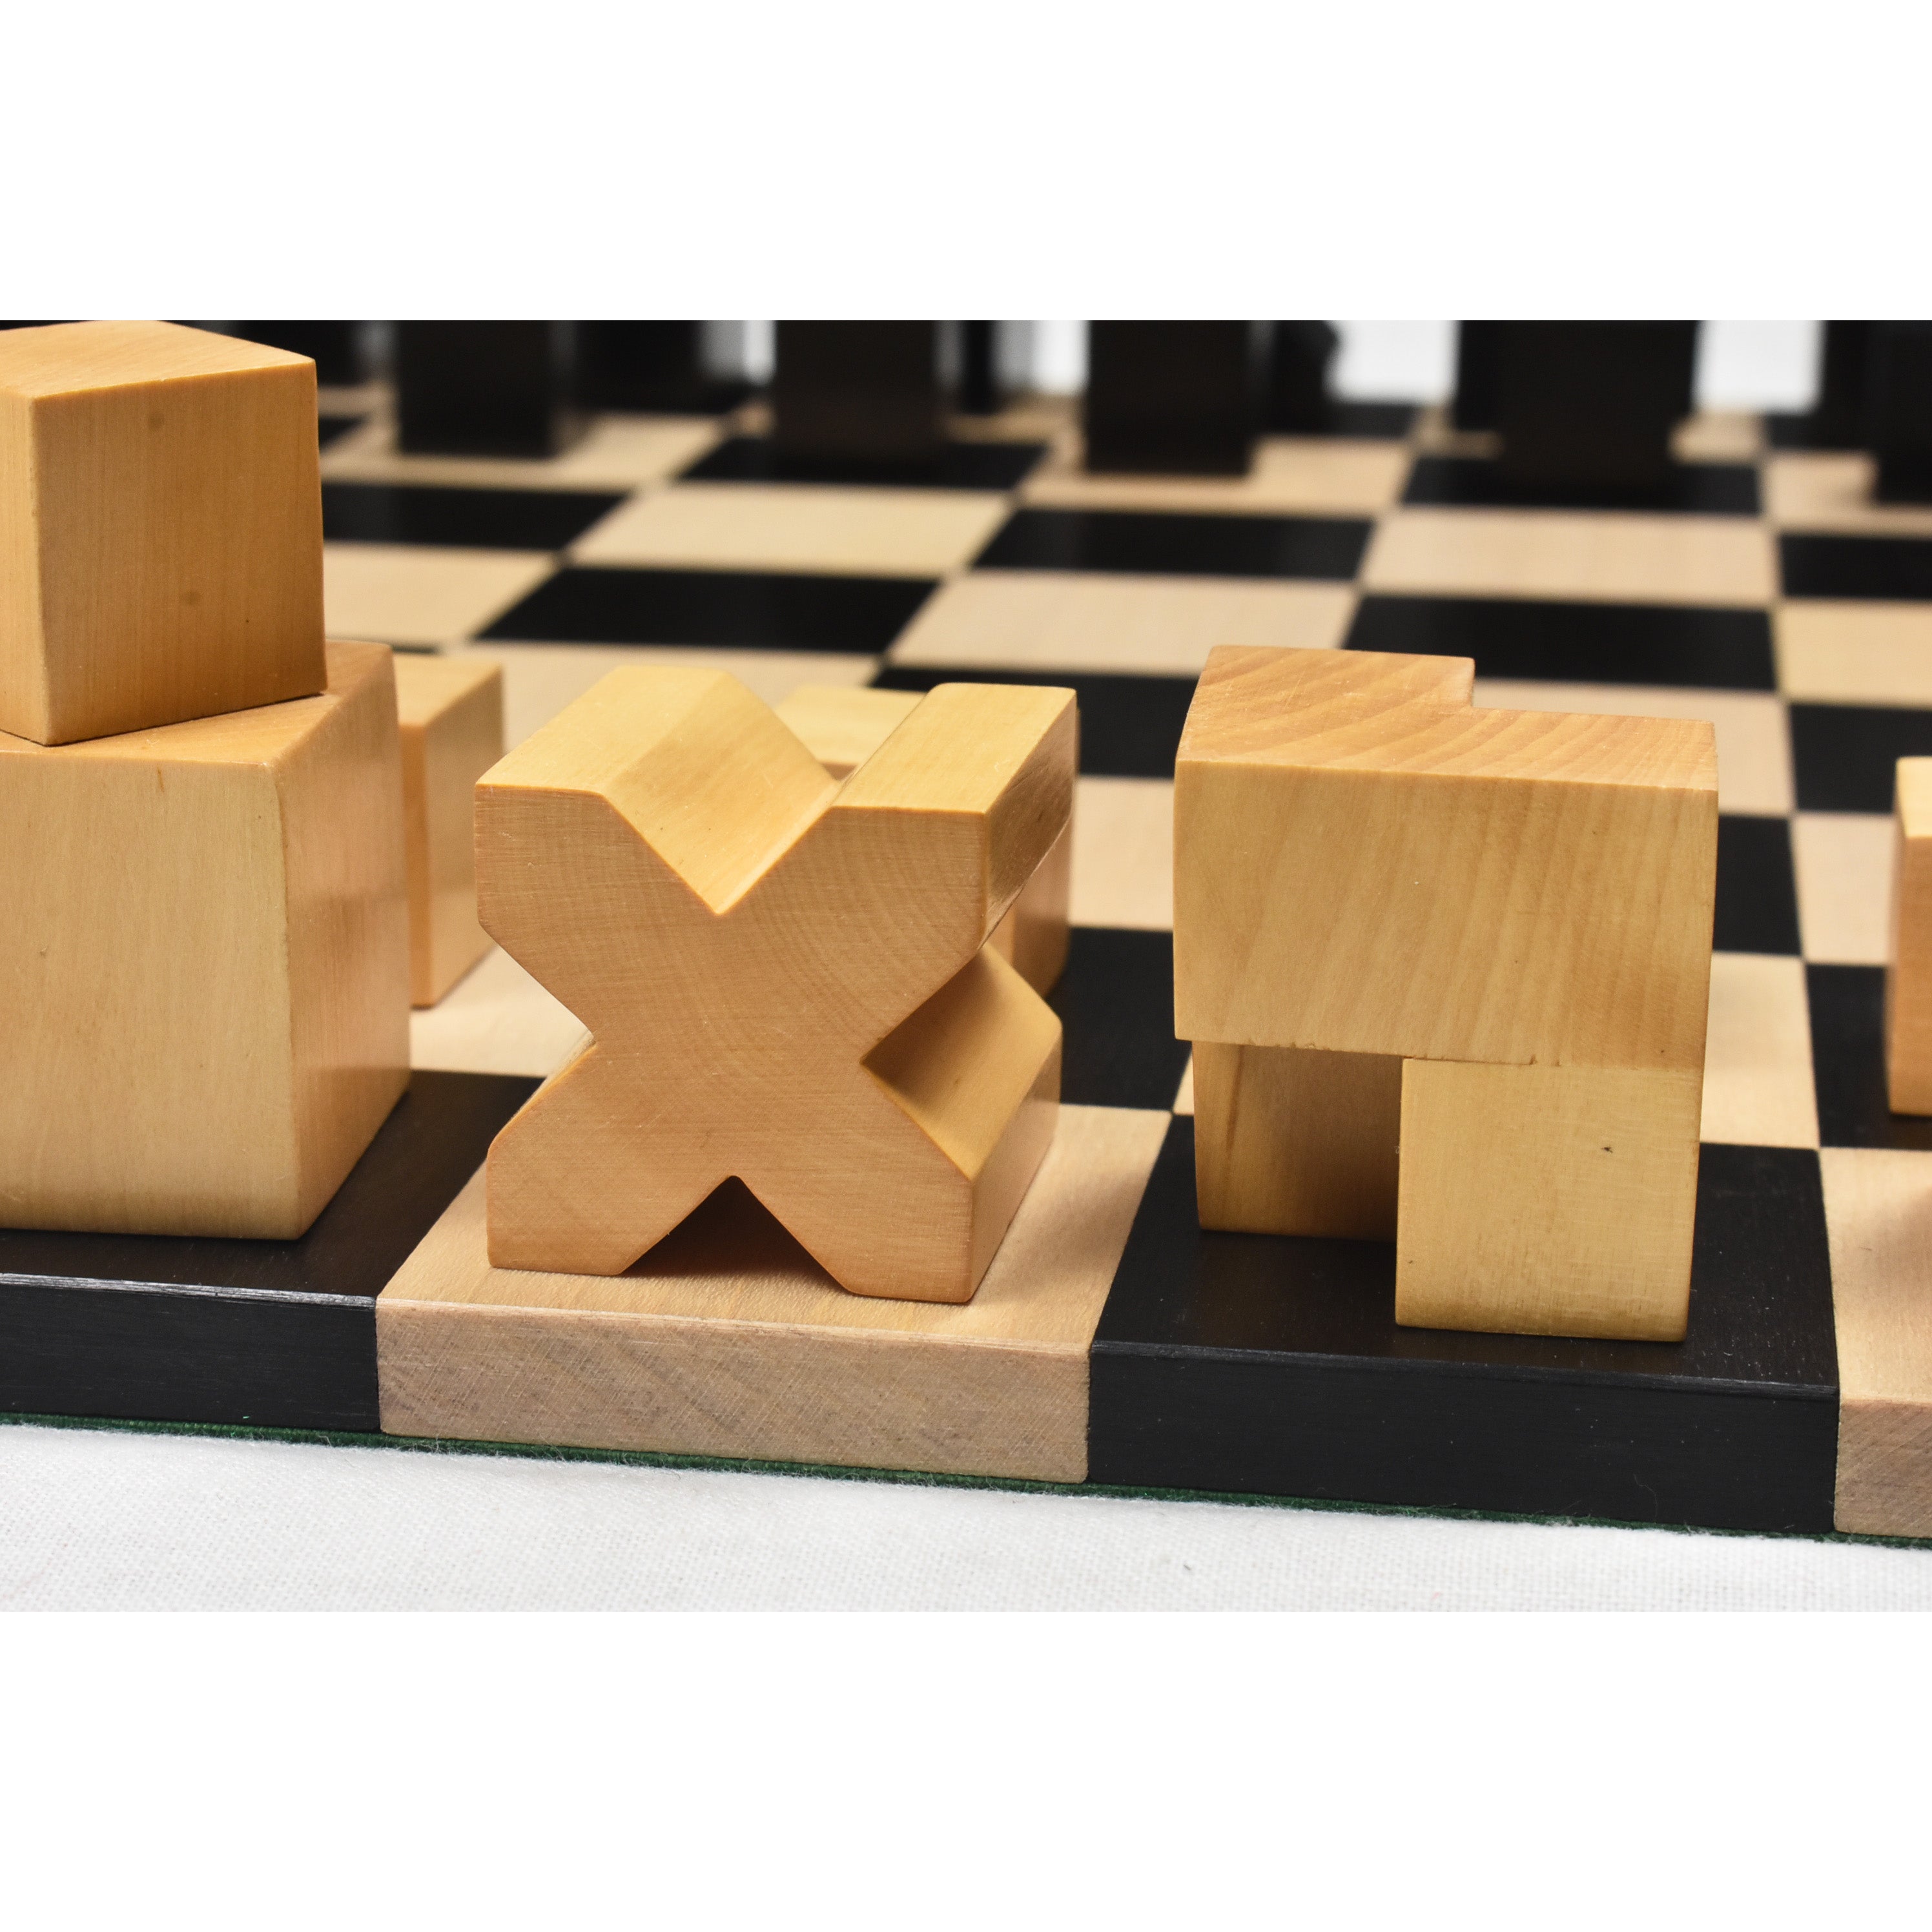 Bauhaus Chess Pieces Handmade Wooden Chess Pieces Set Chess 